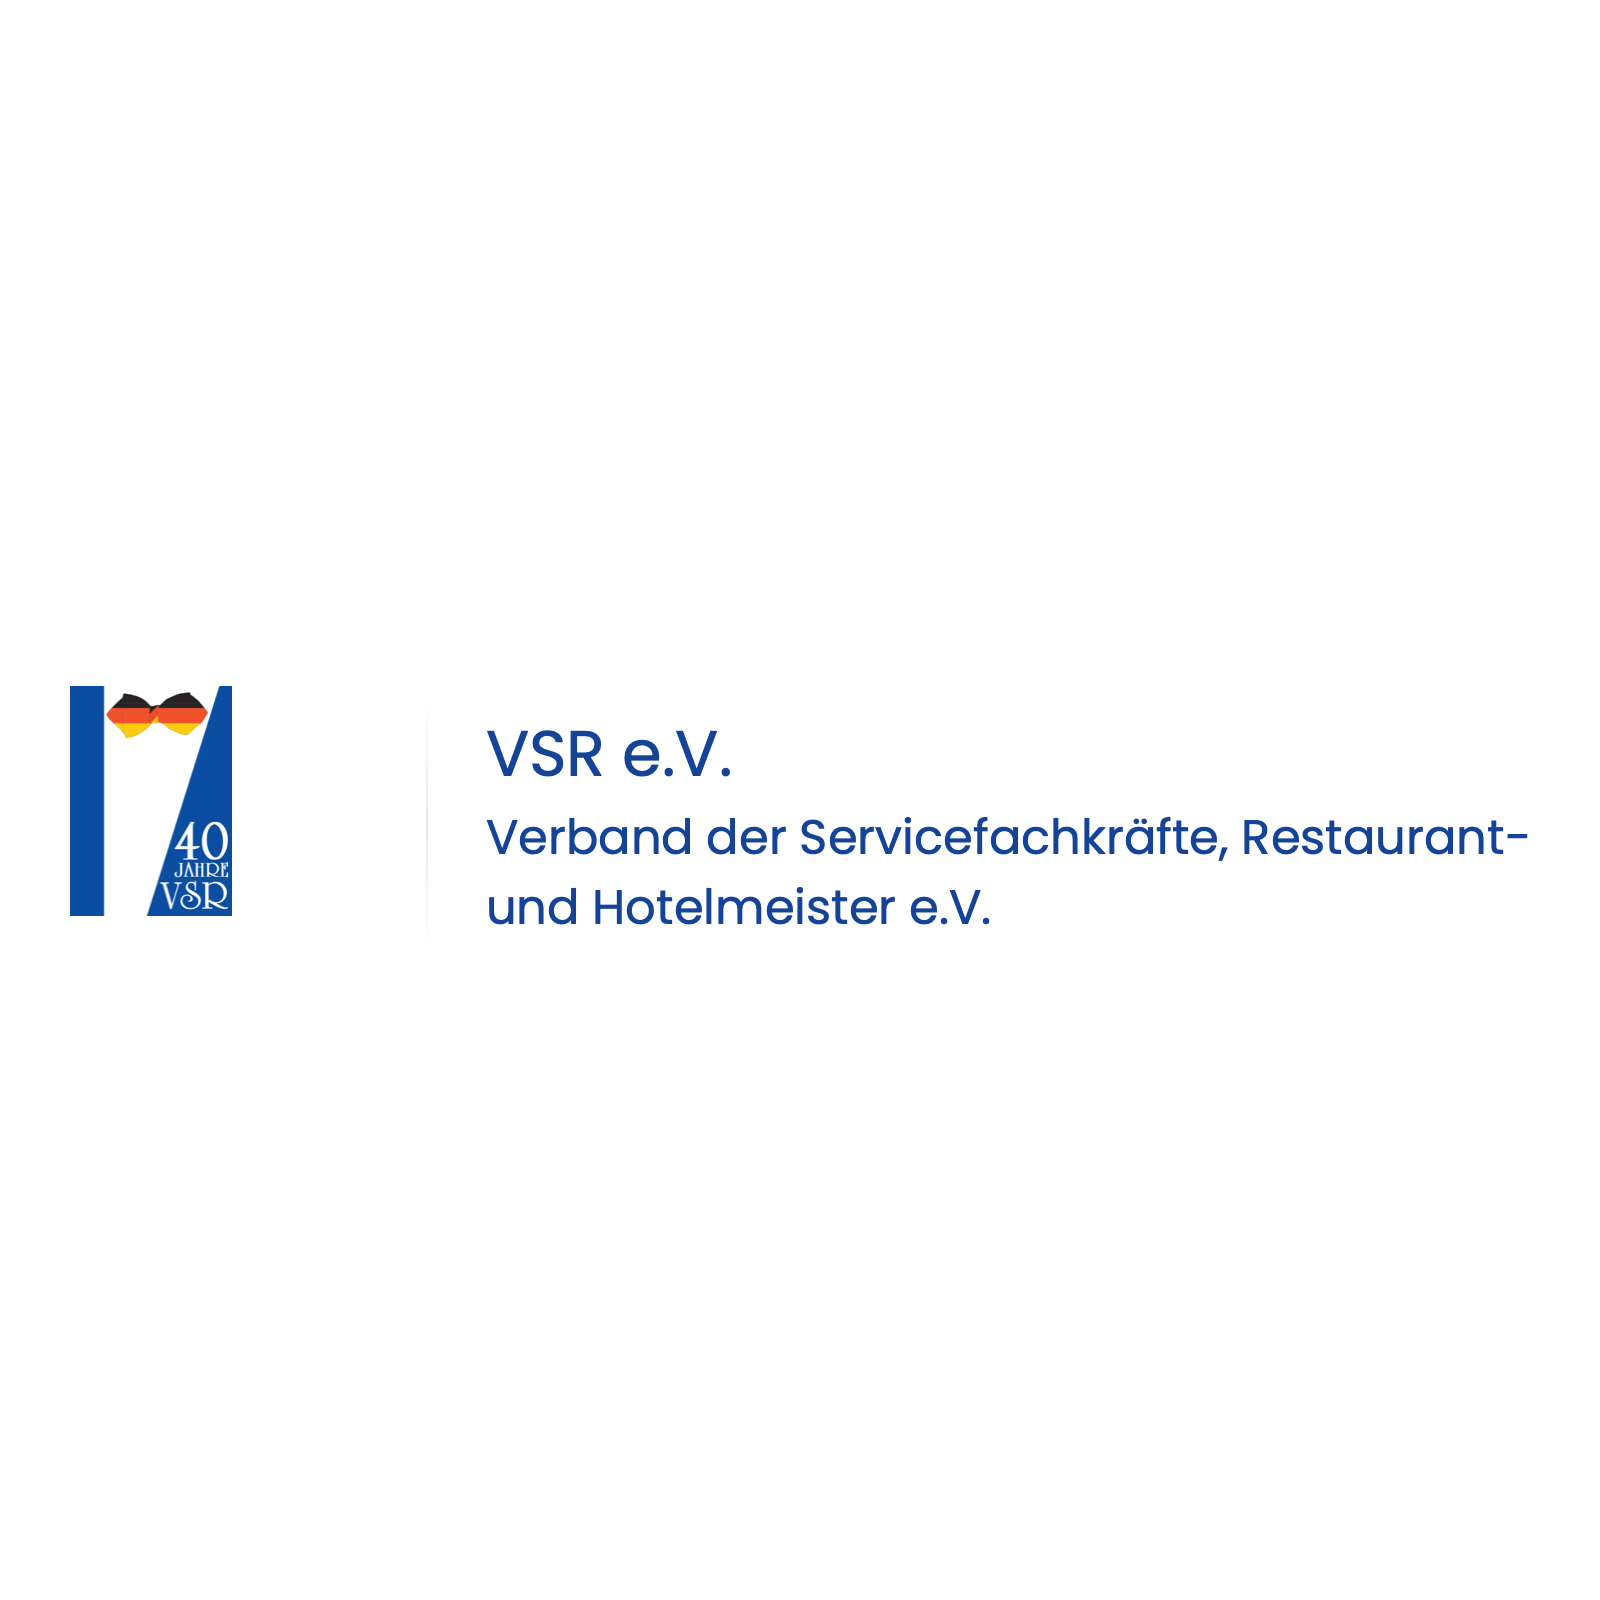 Logo von Verband der Servicefachkräfte, Restaurant- und Hotelfachkräfte e.V.